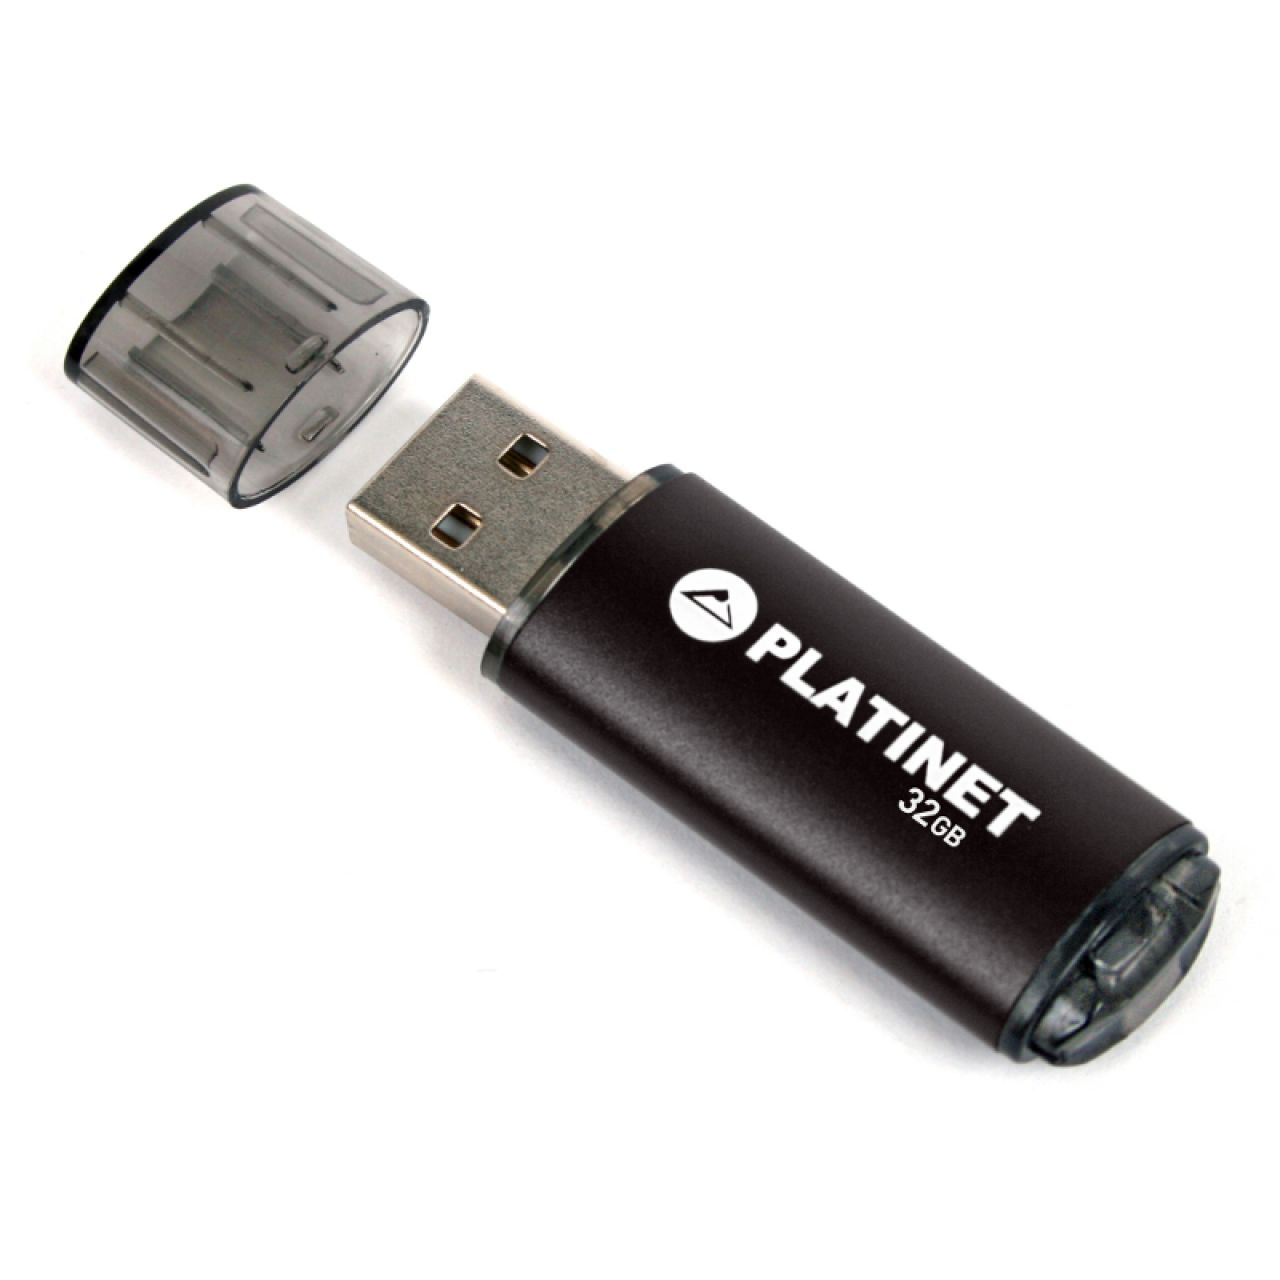 PEN DRIVE USB 2.0 32GB OMEGA PLATINET X-DEPO PRETA PMFE32 40621